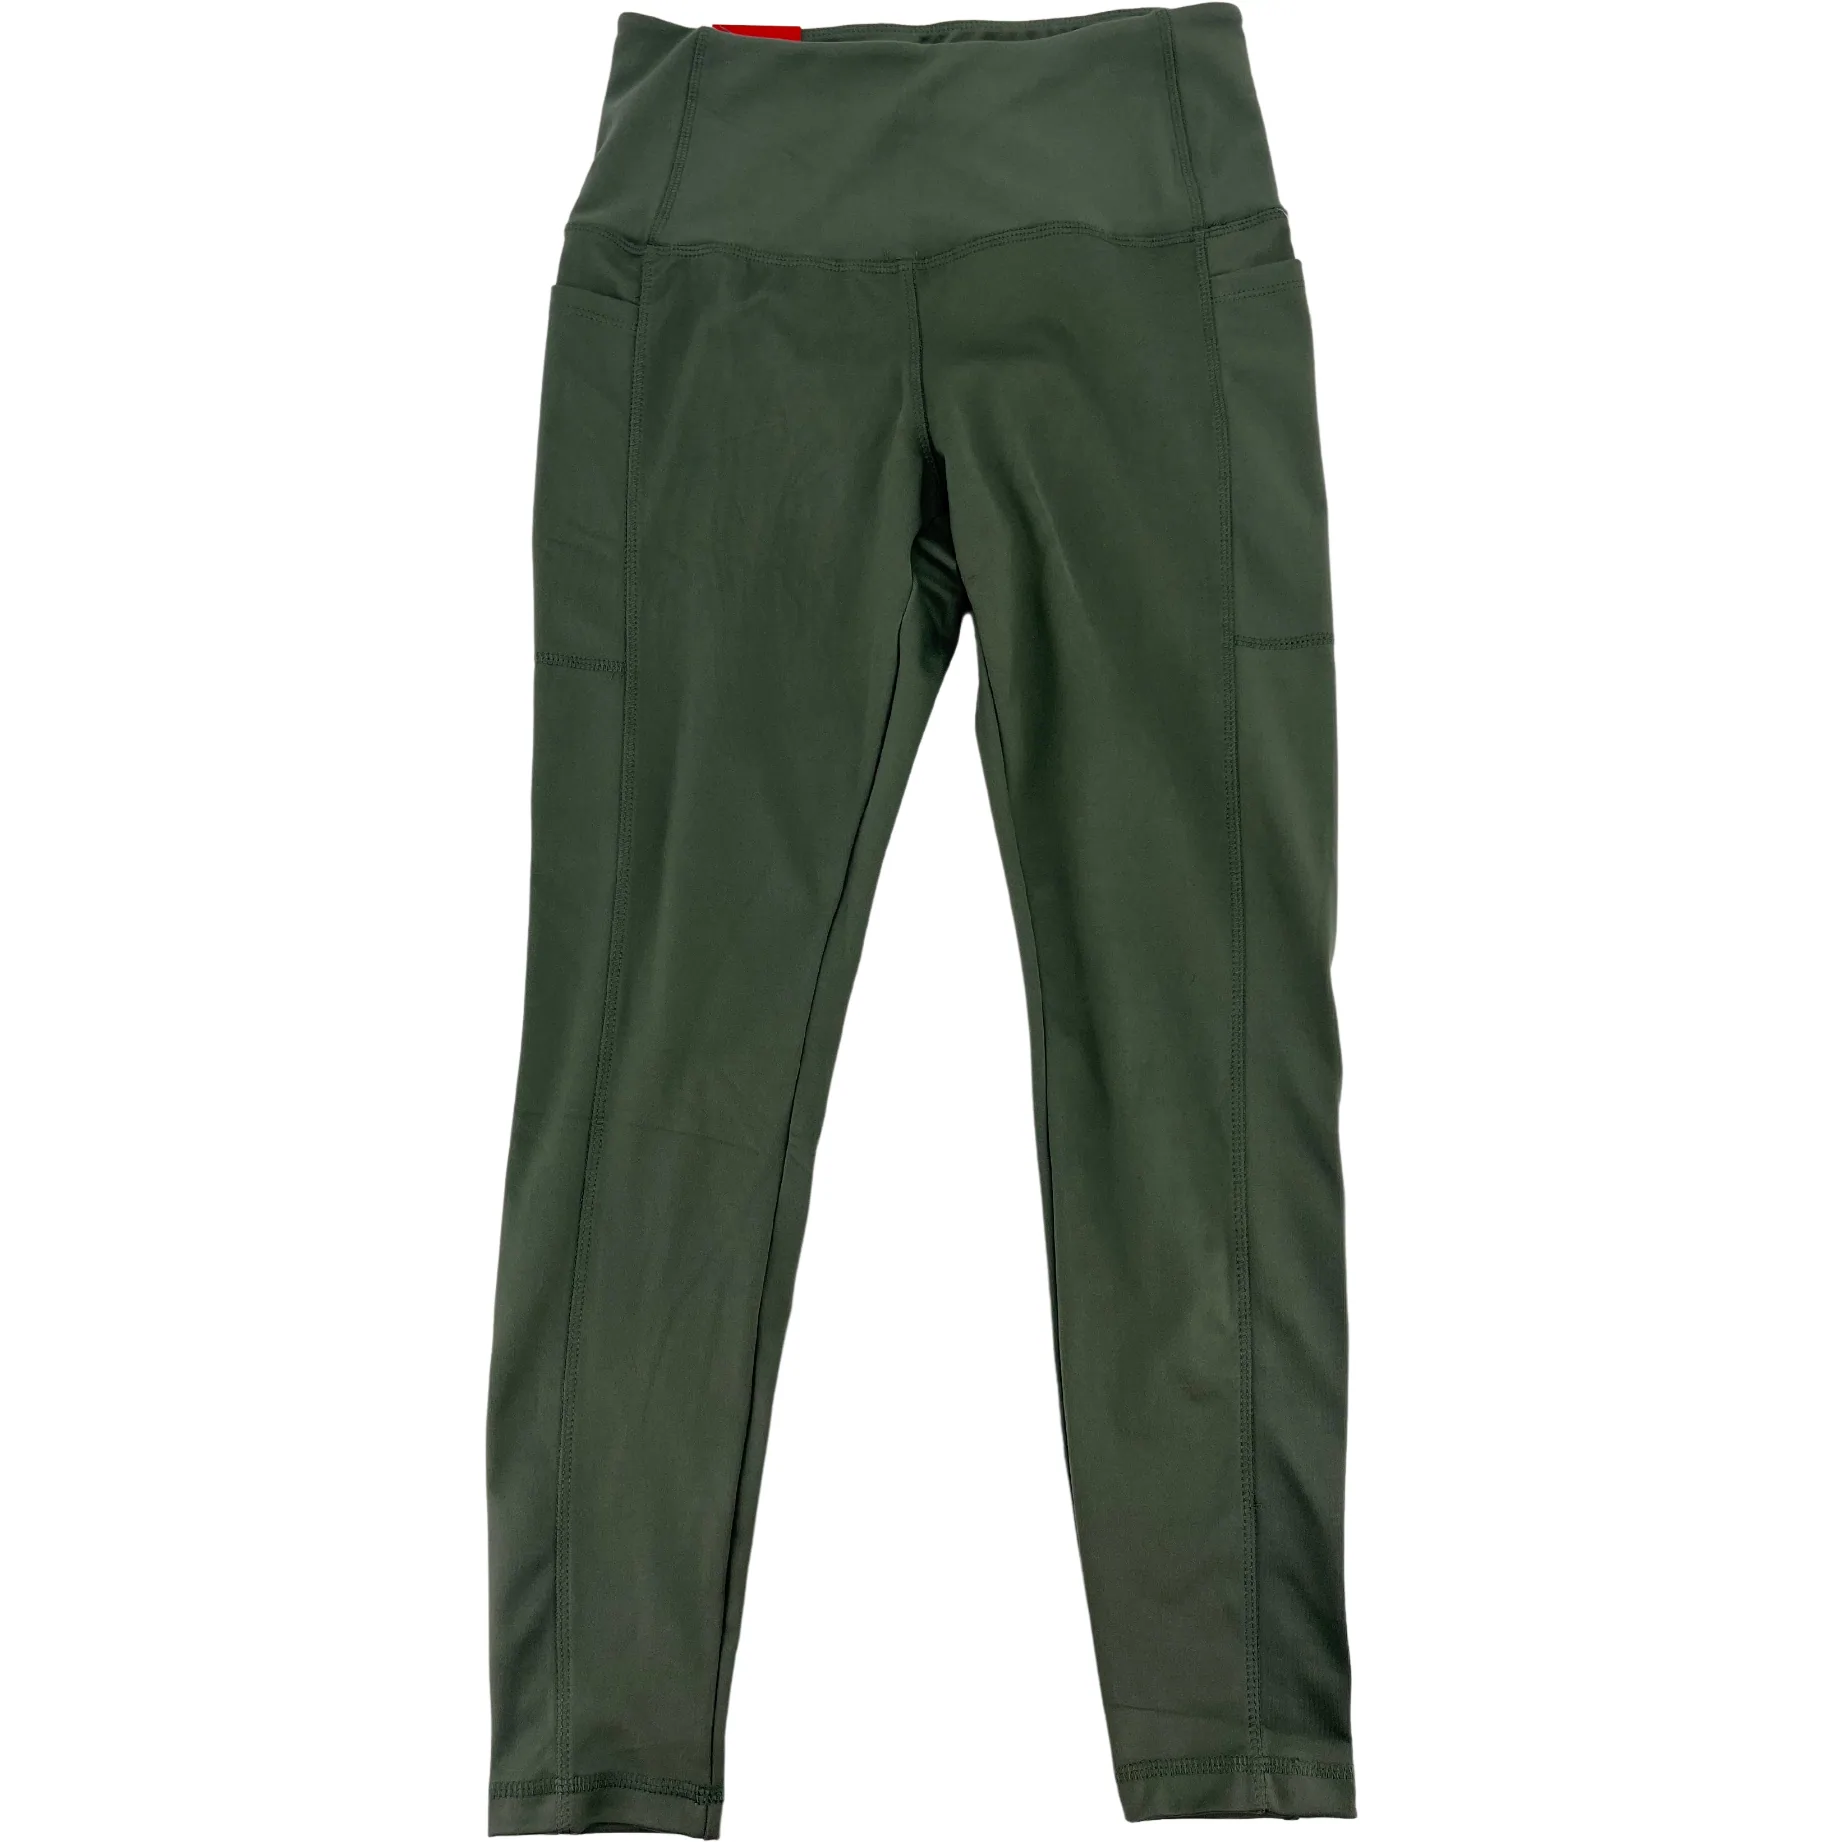 Danskin Women's 7/8 Leggings / Women's Lounge Pants / Light Green / Size Medium